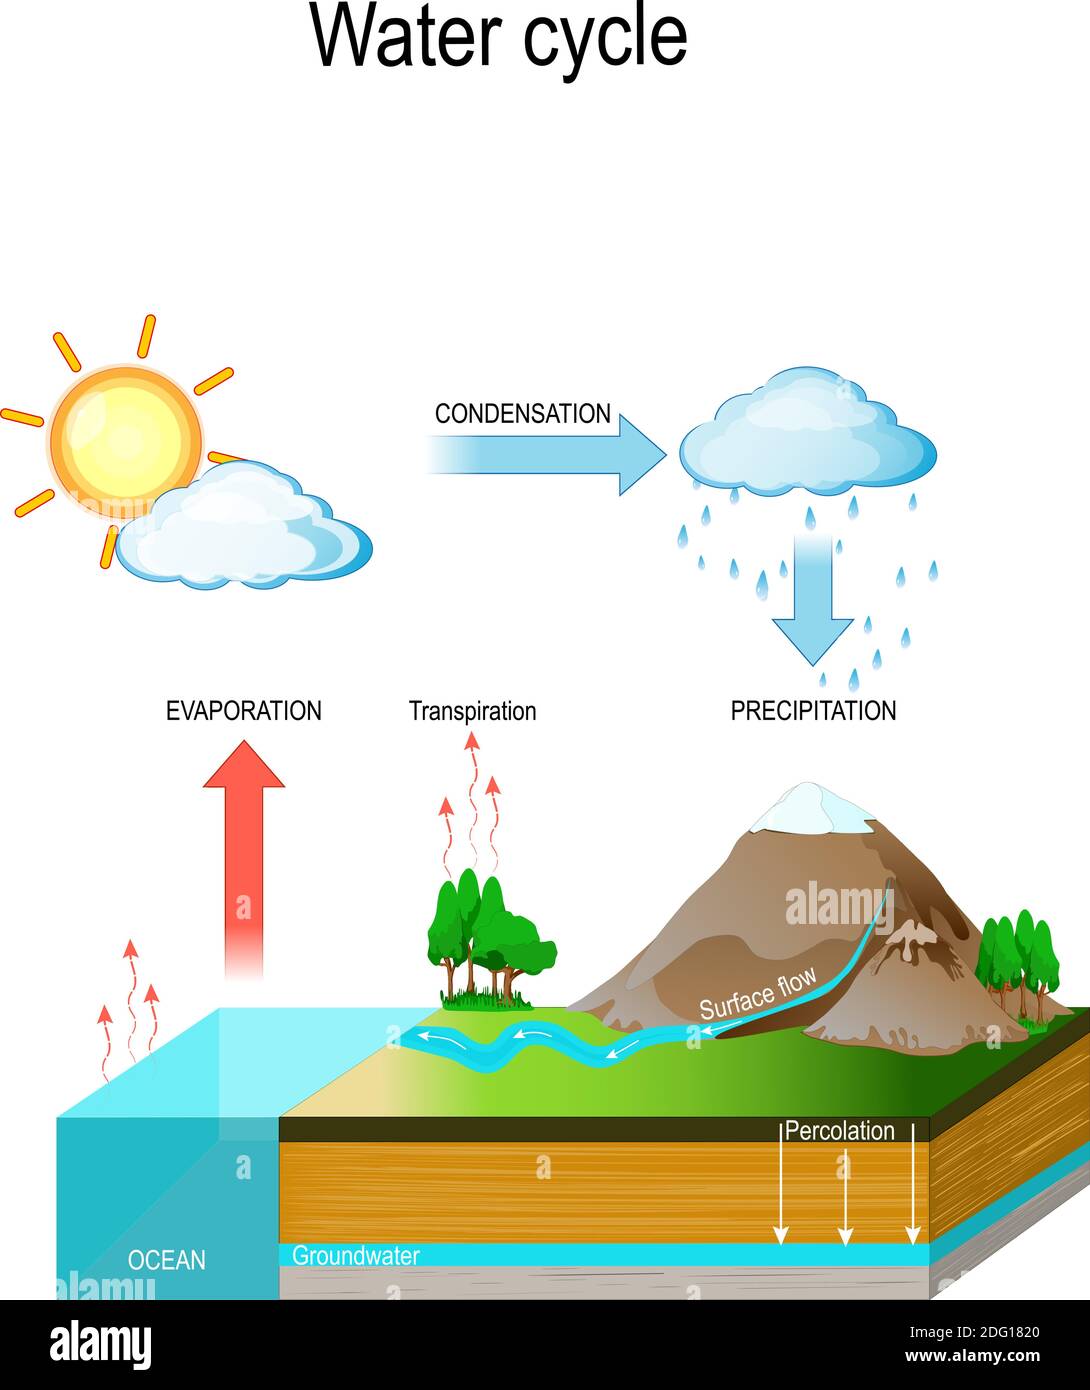 Cycle de l'eau dans l'environnement naturel. Le soleil, qui entraîne le cycle de l'eau, chauffe l'eau dans les océans et les mers. L'eau s'évapore sous forme de vapeur d'eau dans l'air Illustration de Vecteur